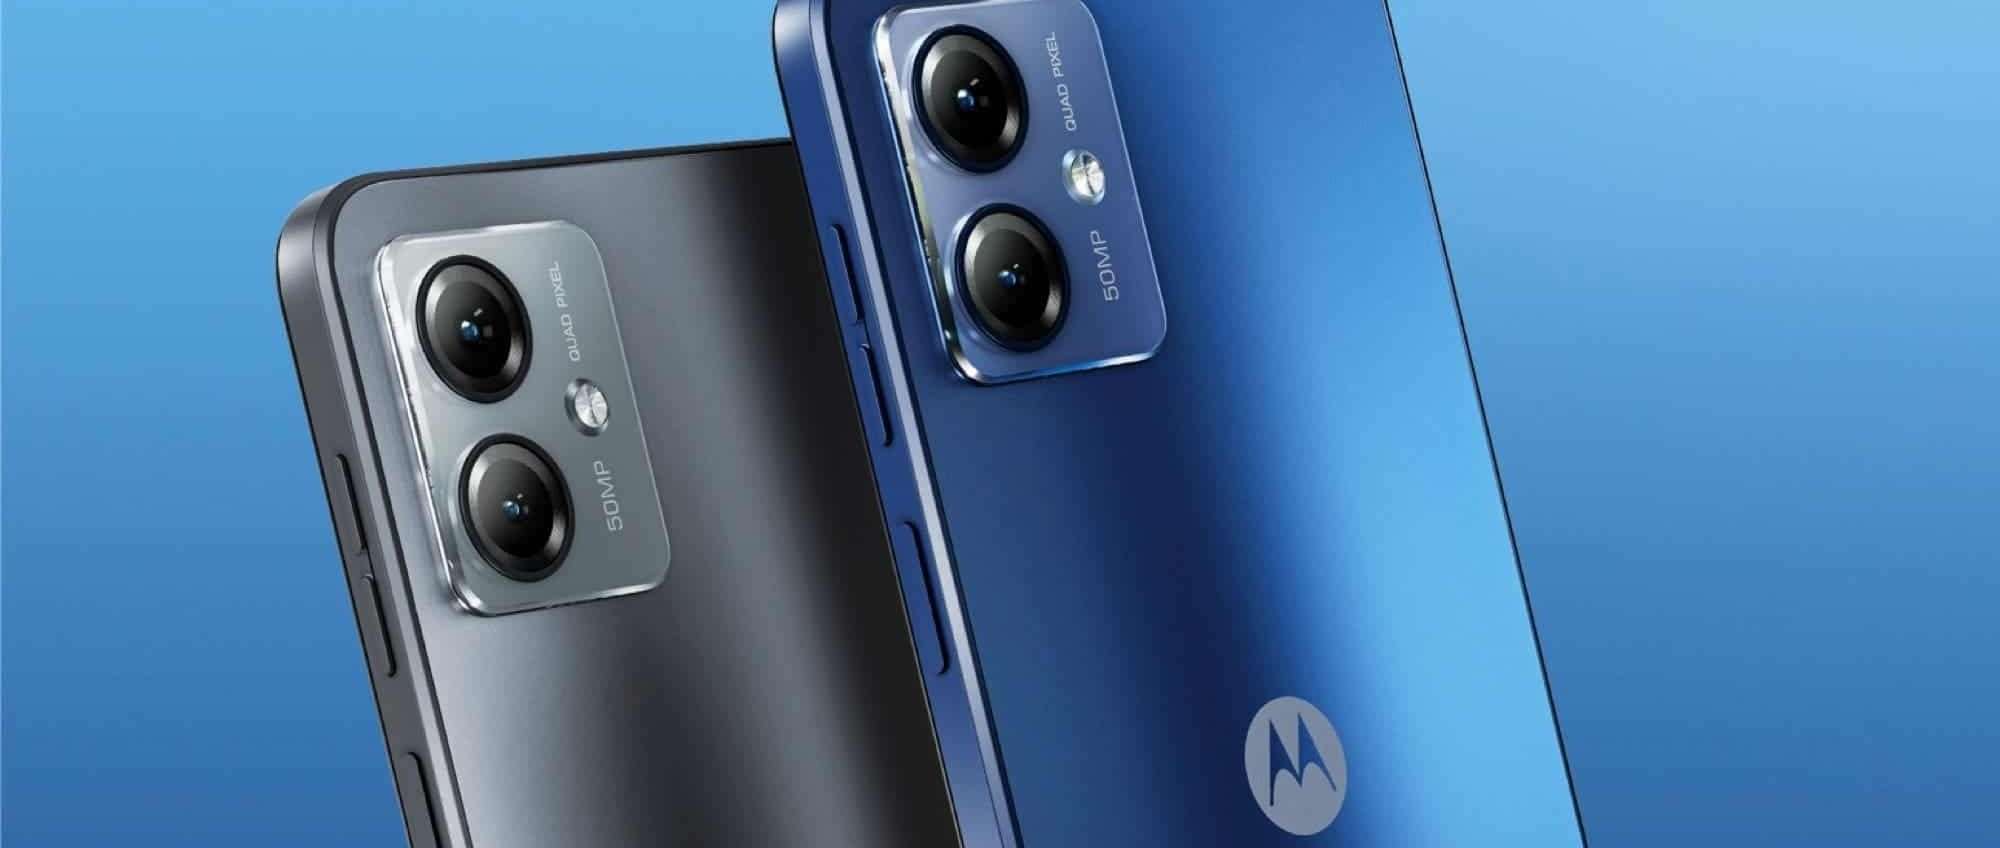 Questo smartphone Motorola in offerta a 97€ su Amazon è un VERO AFFARE